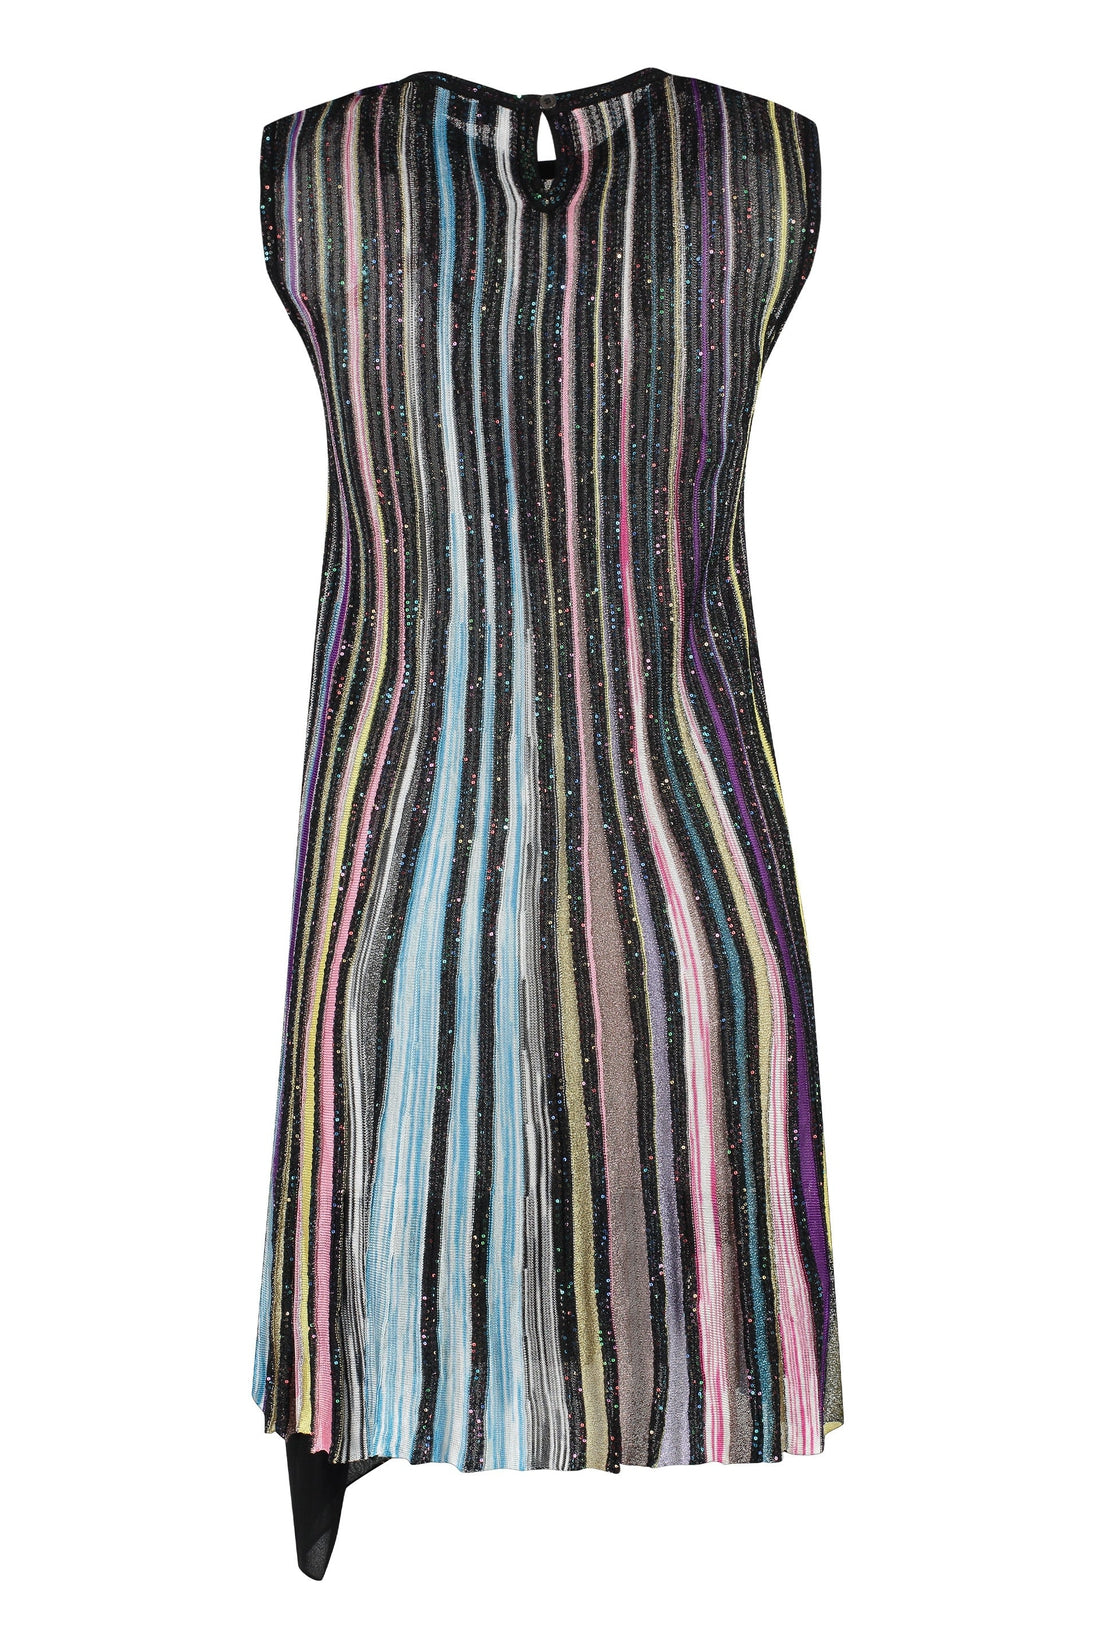 Missoni-OUTLET-SALE-Lurex knit dress-ARCHIVIST